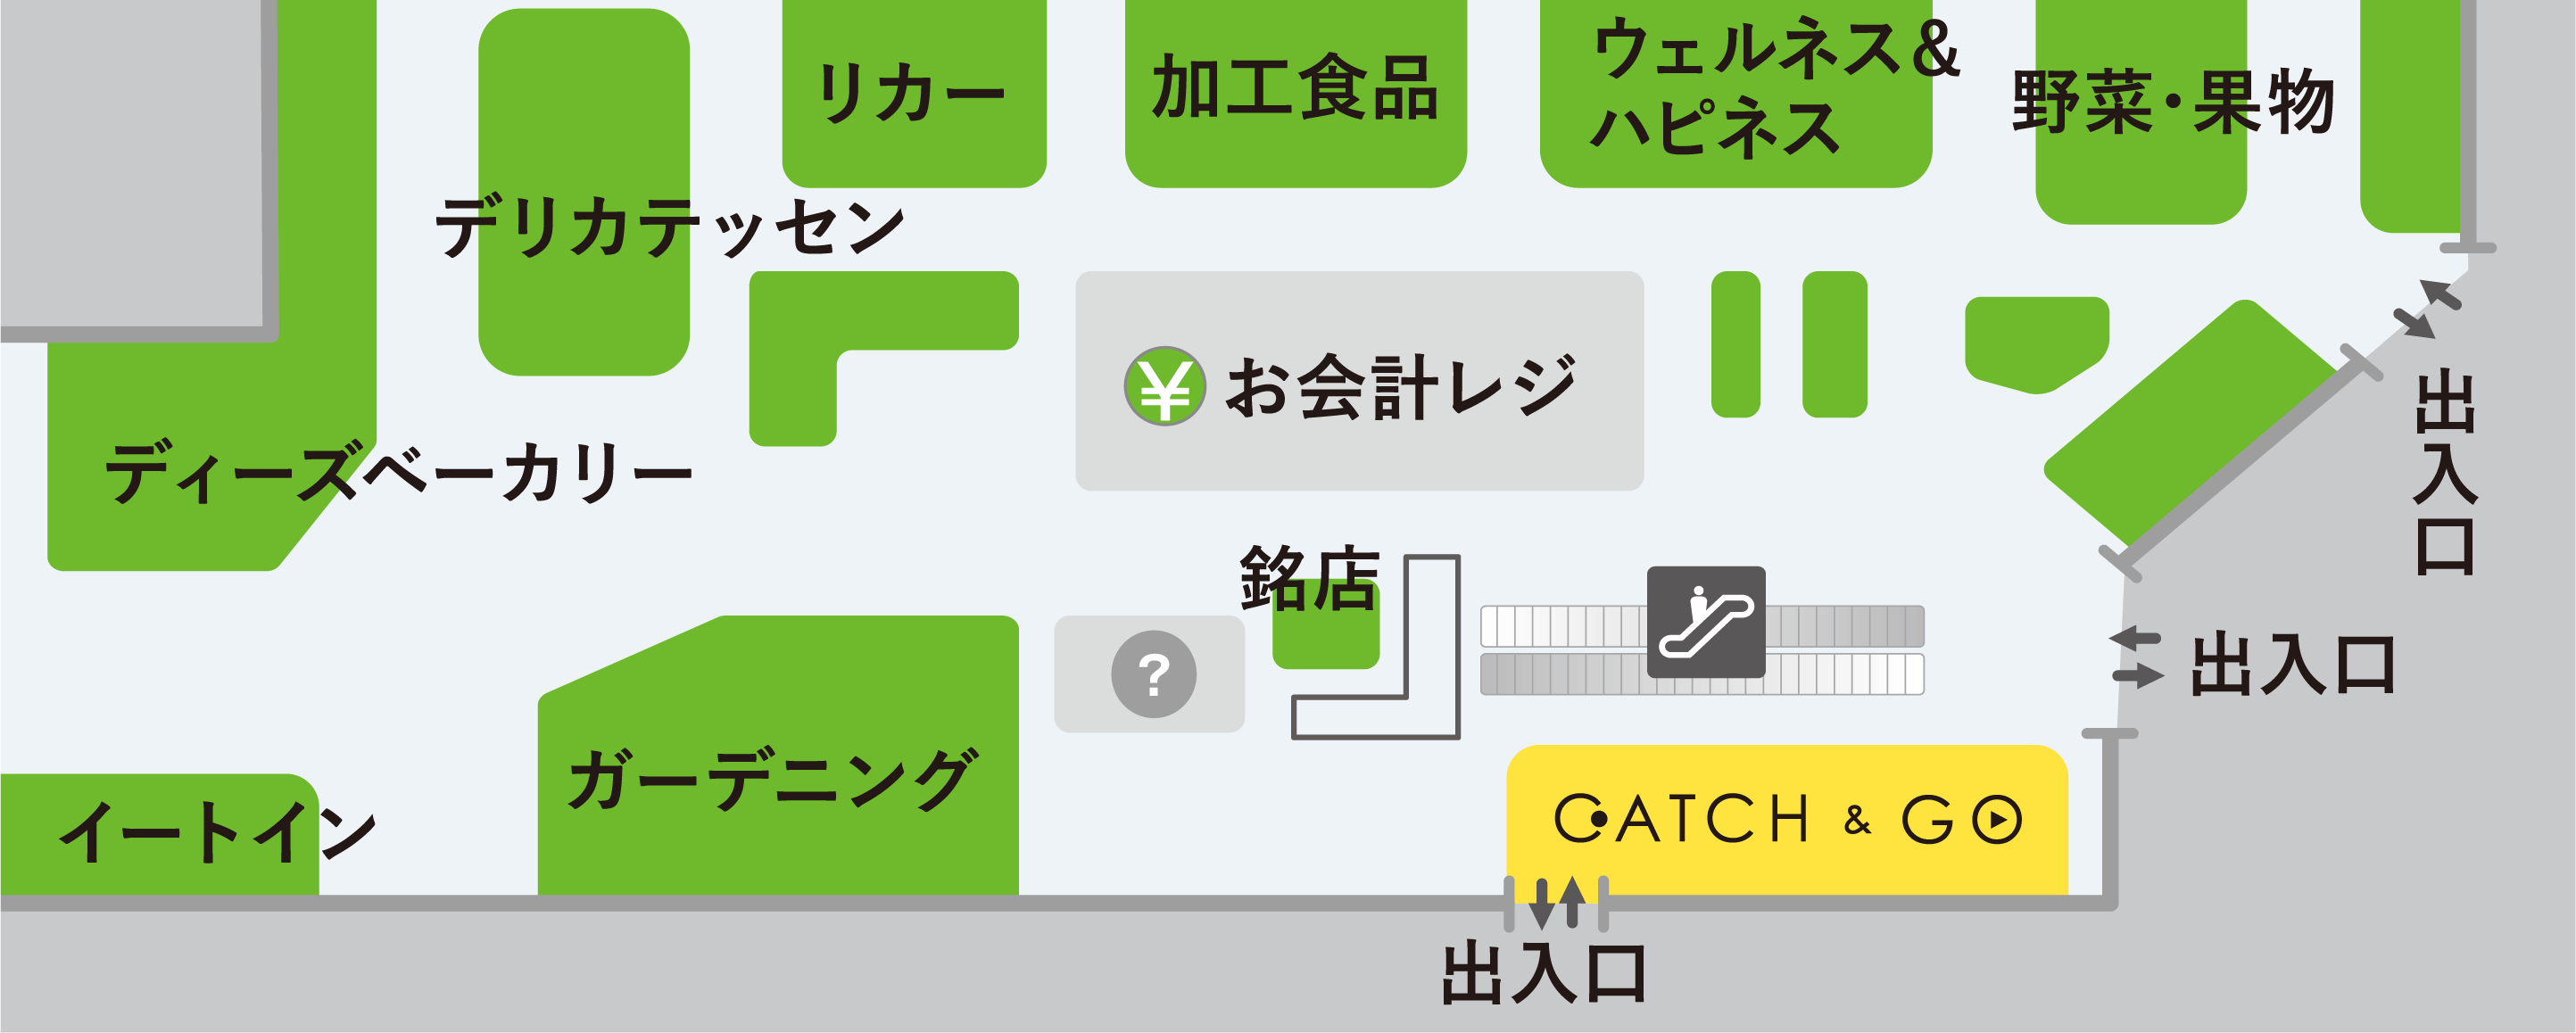 イオンフードスタイル横浜西口店 CATCH&GOがあるフロアーの地図